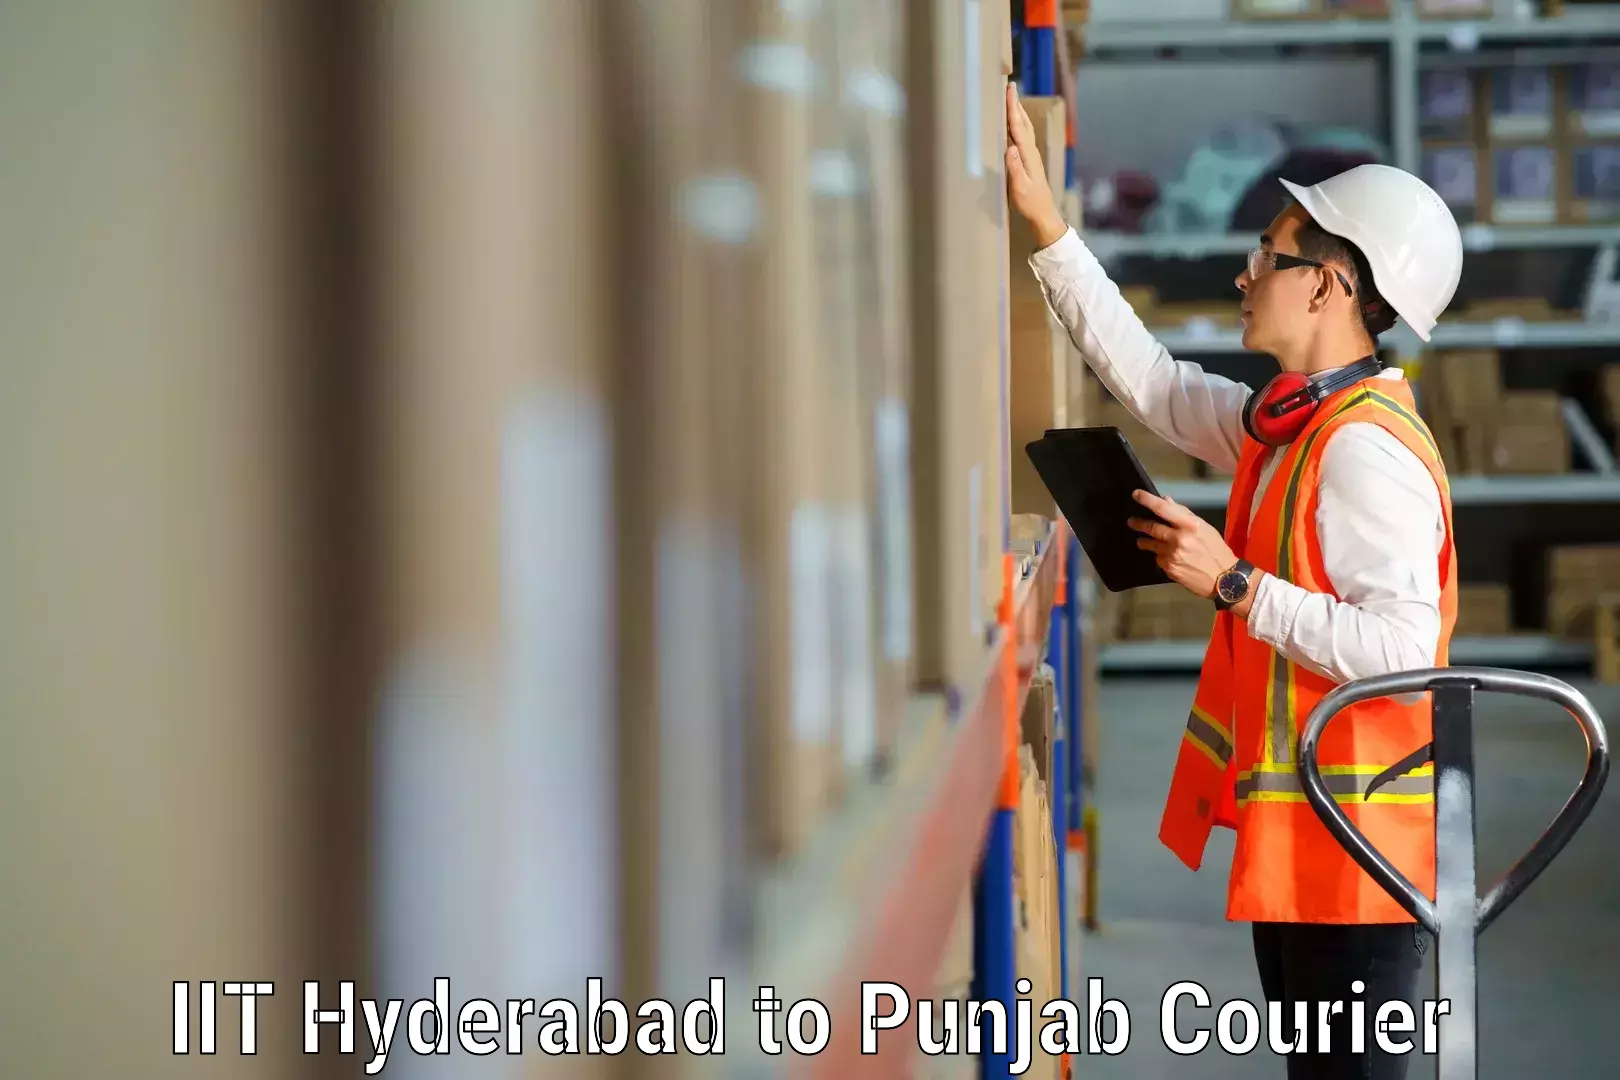 Furniture moving plans IIT Hyderabad to Punjab